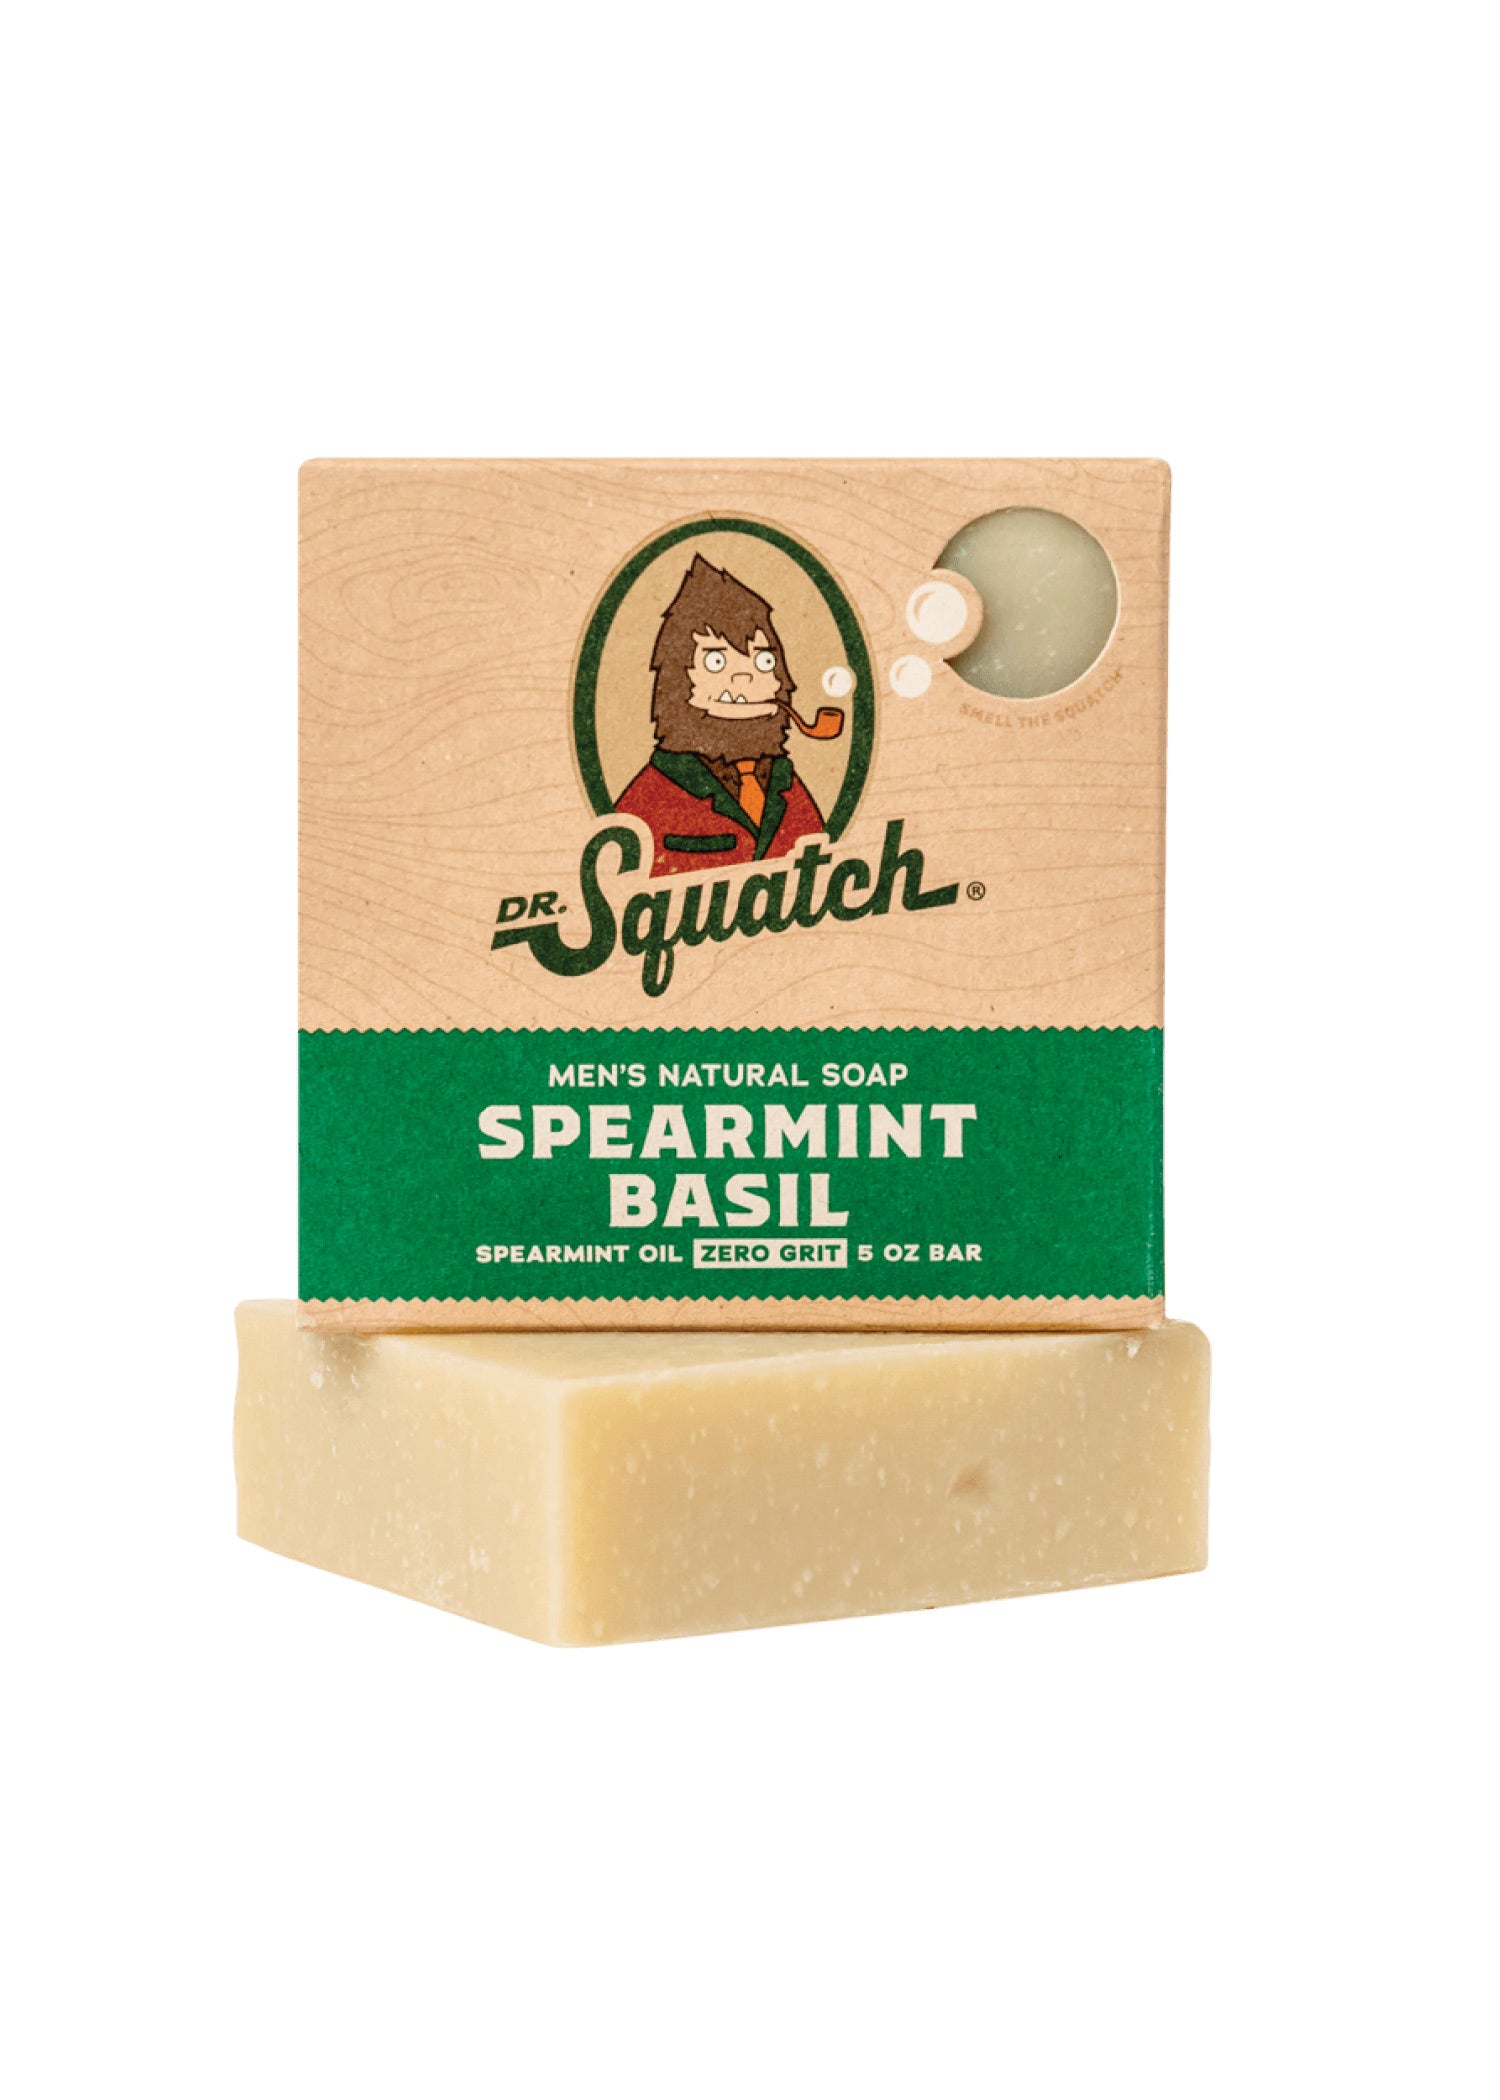 Dr. Squatch Soap natural bar soap Unisex 5 oz - Choose Your Scent